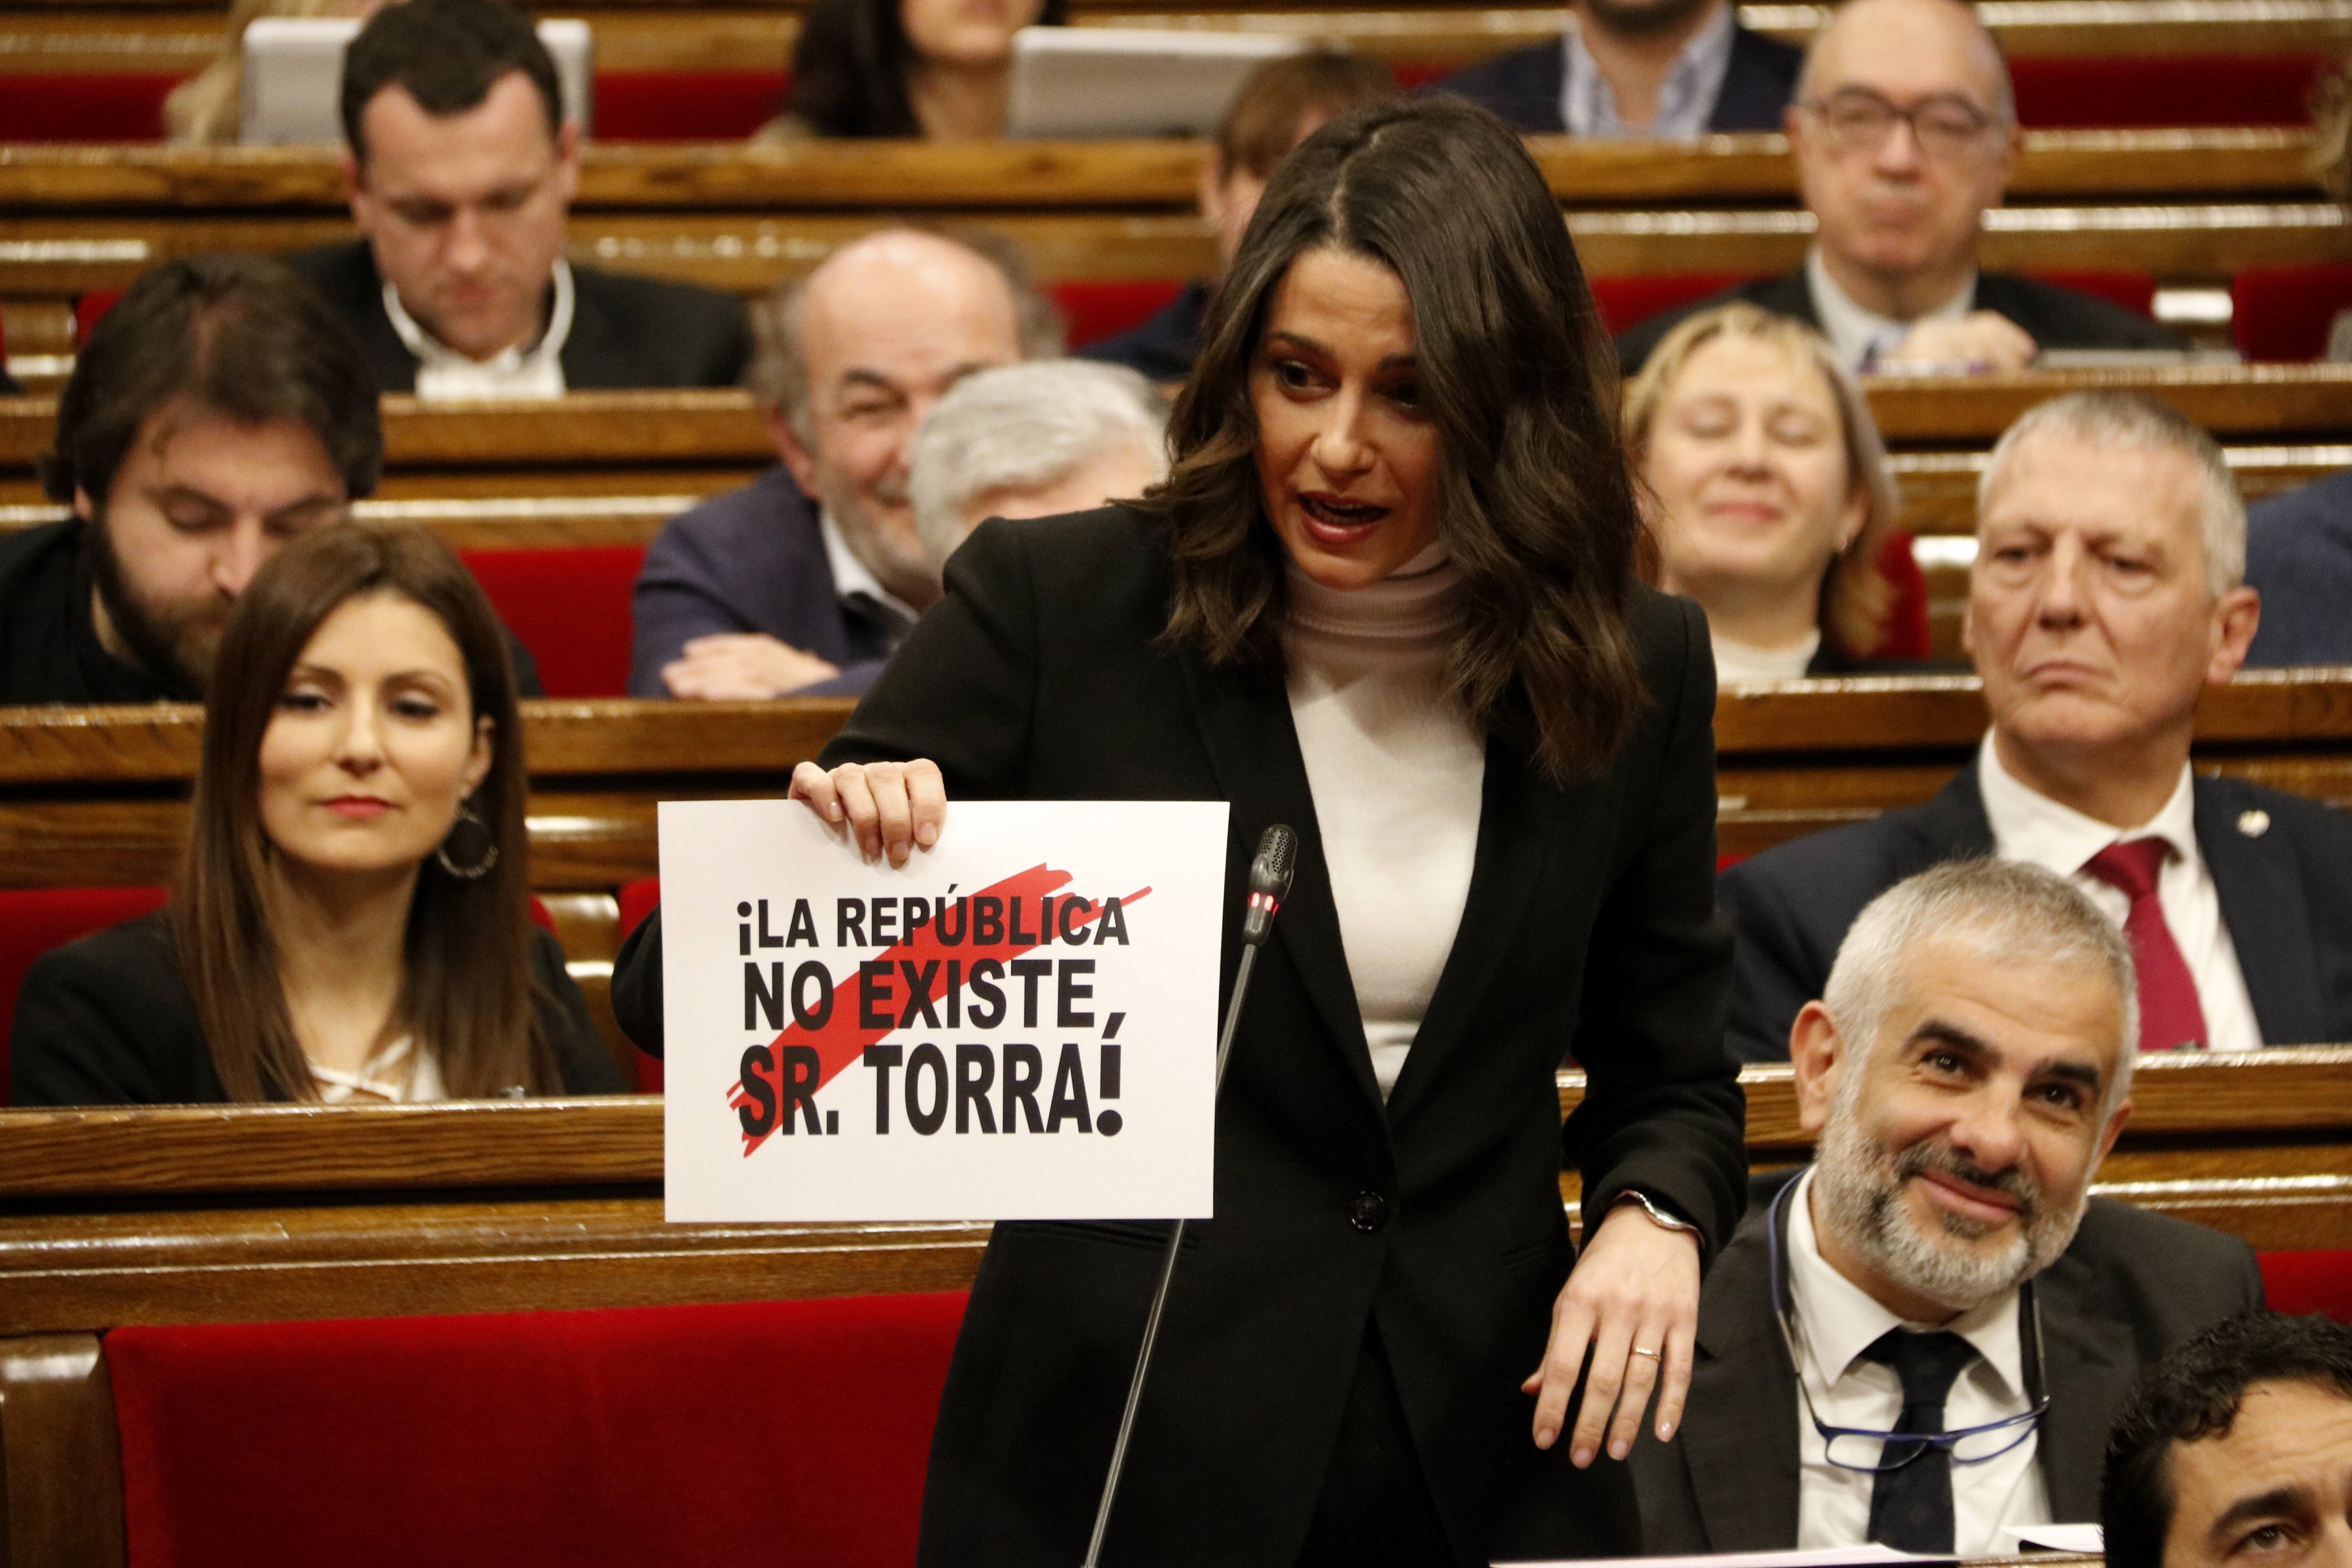 Torra ridiculiza los carteles de Arrimadas en el pleno: "Queda inaugurada la nueva temporada"